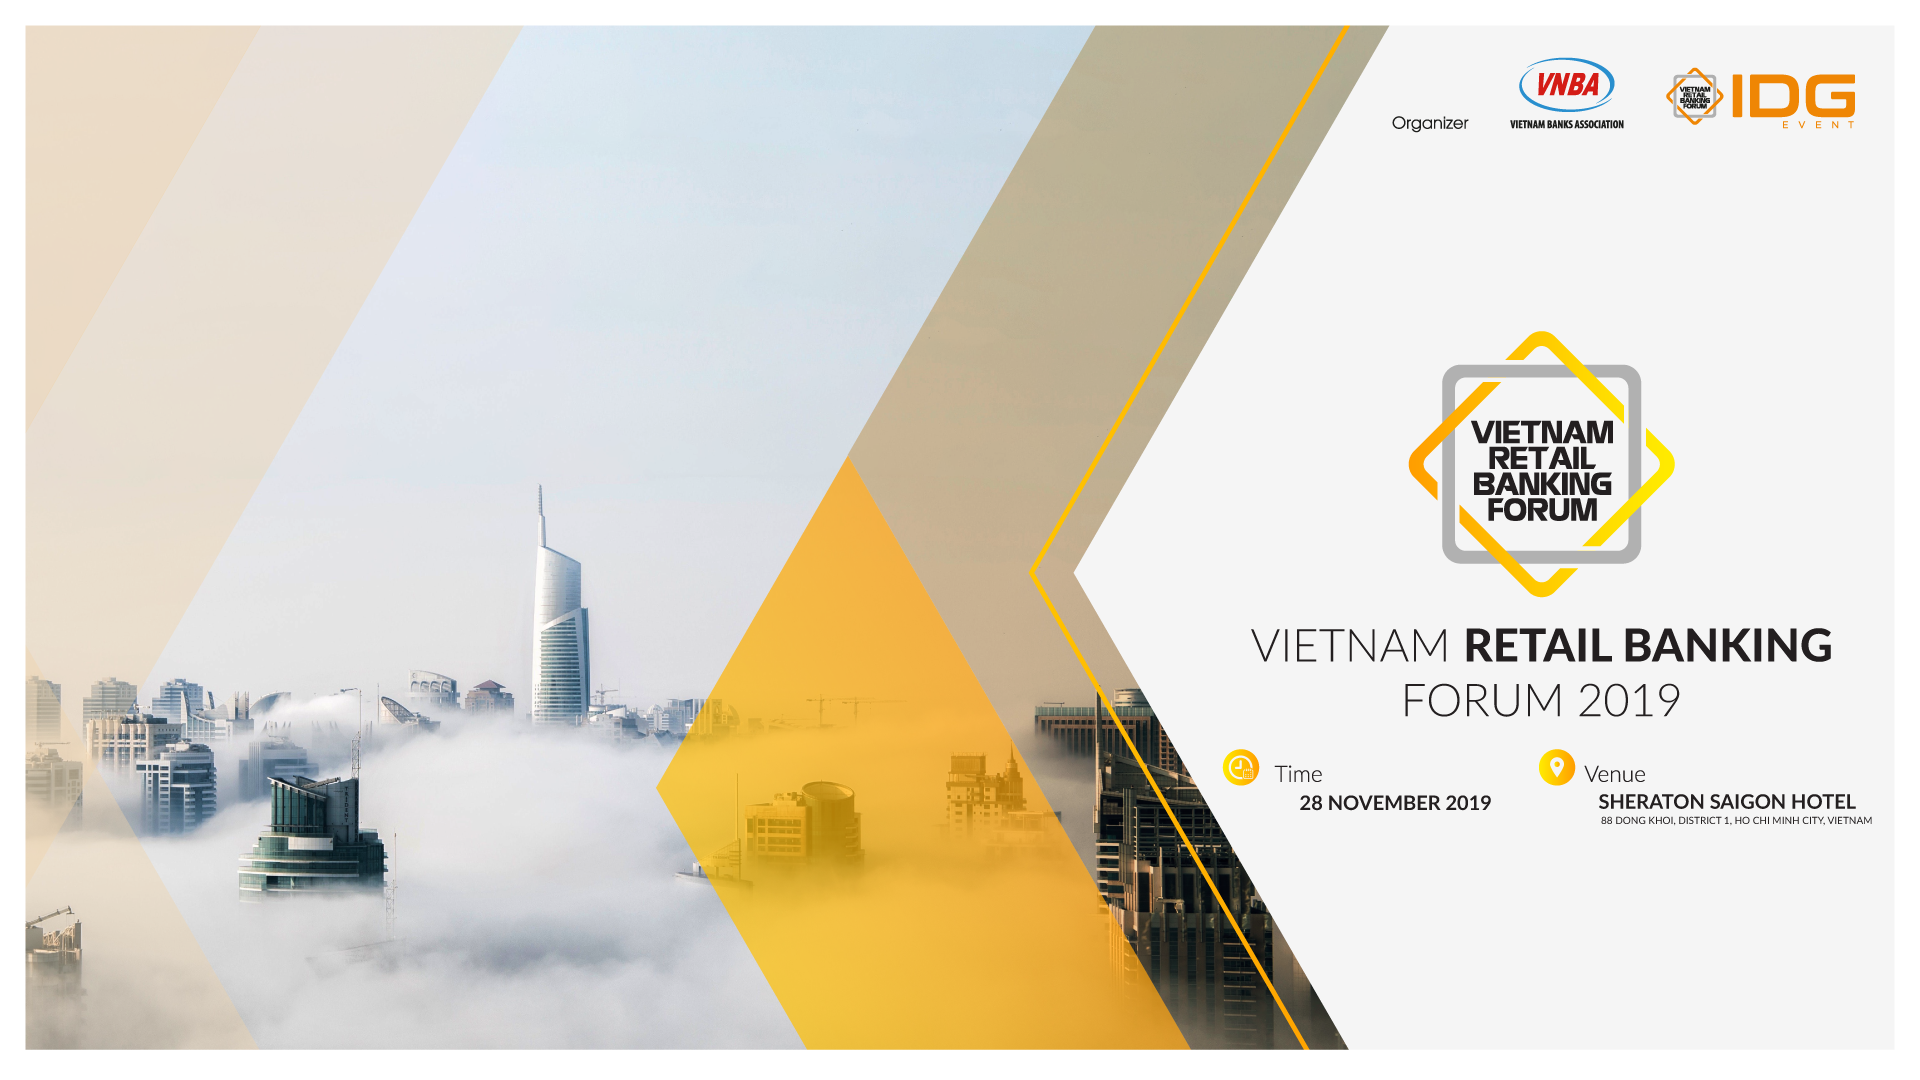 Diễn đàn Ngân hàng Bán lẻ 2019 tổ chức ngày 28/11/2019 tại Thành phố Hồ Chí Minh.